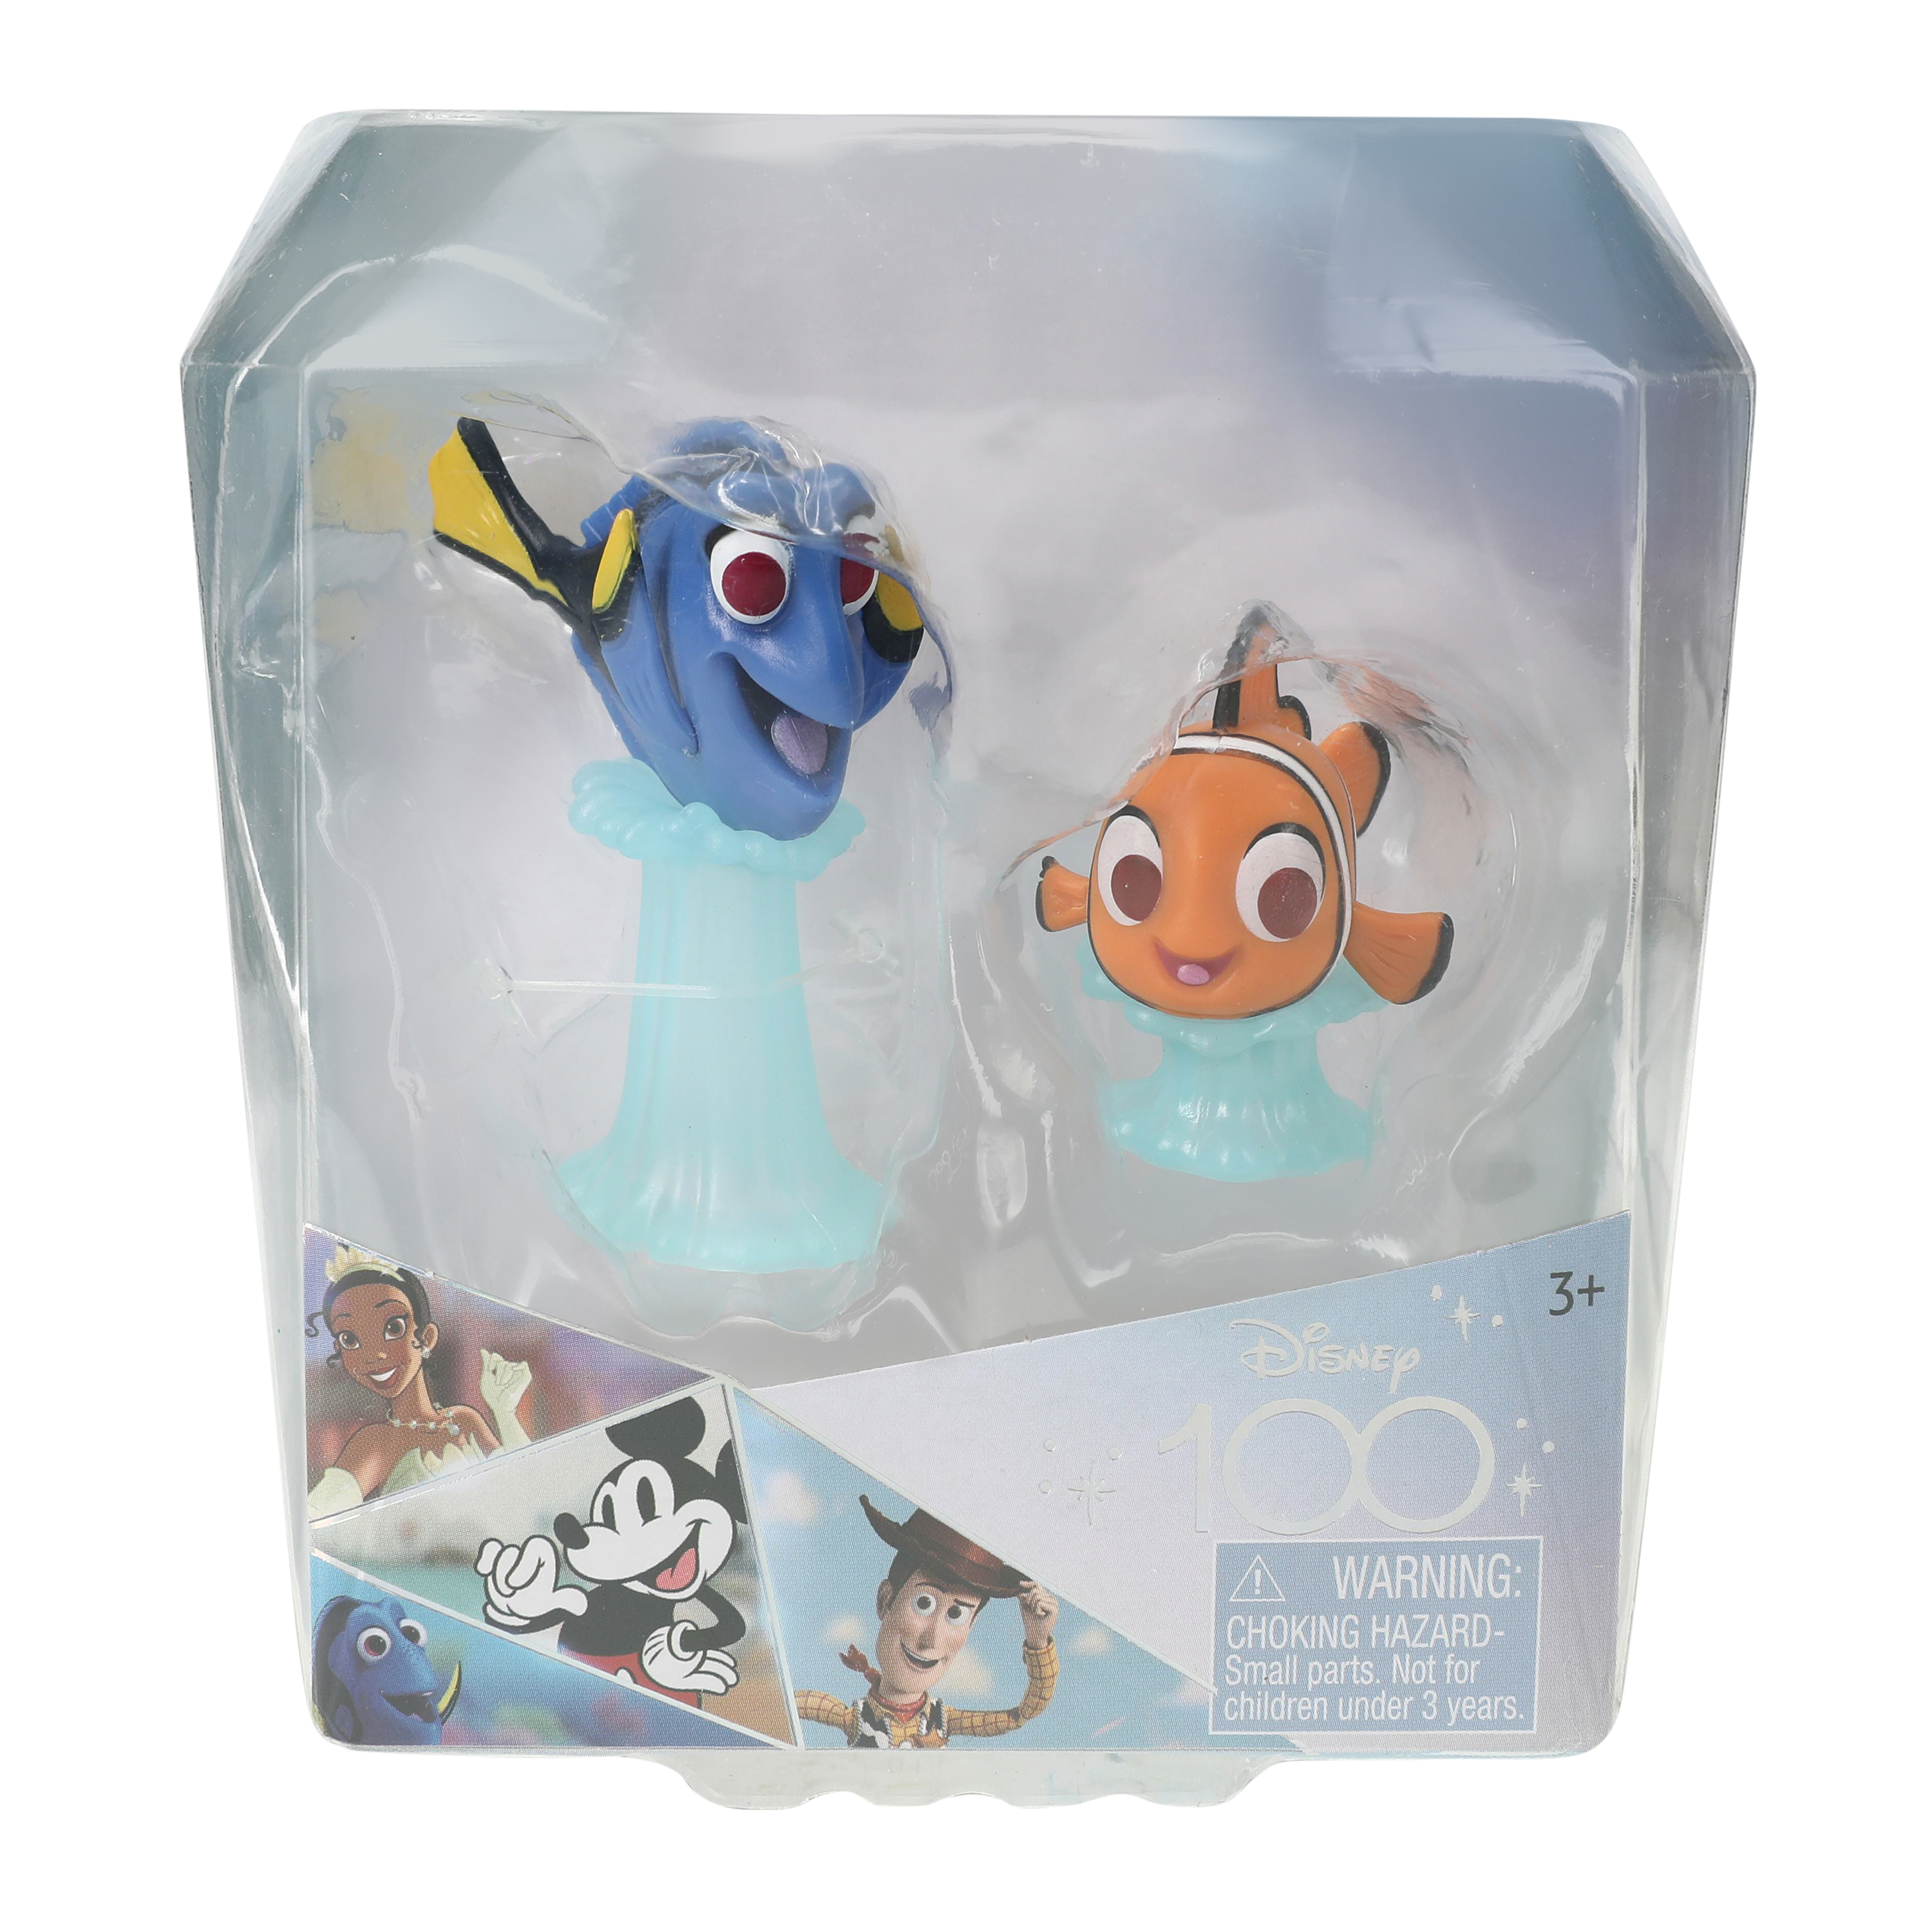 Disney 100 Pixar Finding Nemo Figure Set 2-Pack